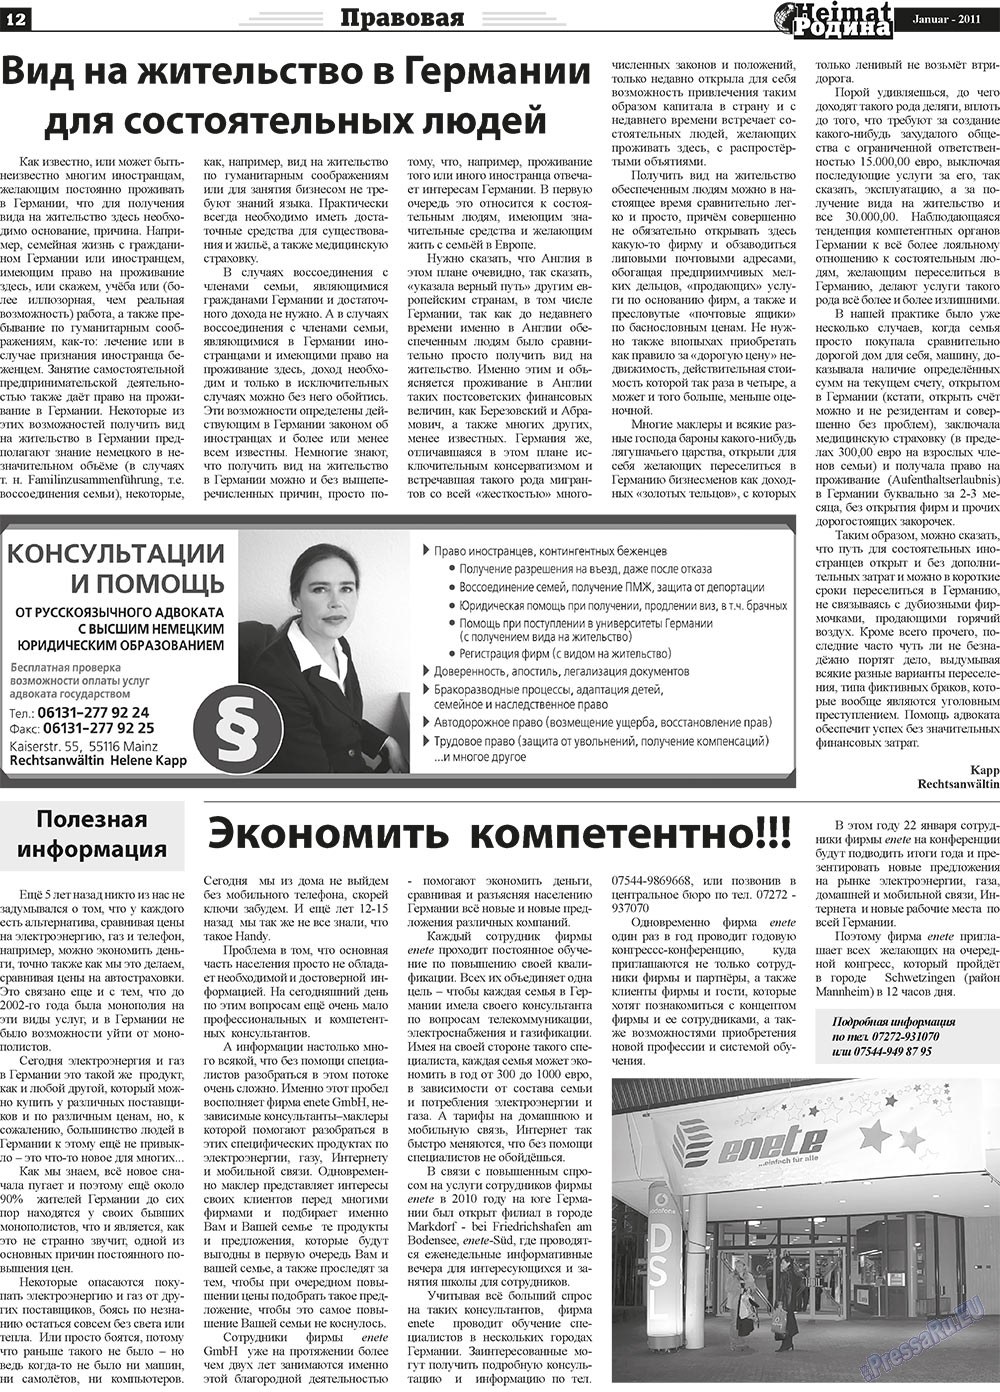 Heimat-Родина (газета). 2011 год, номер 1, стр. 12